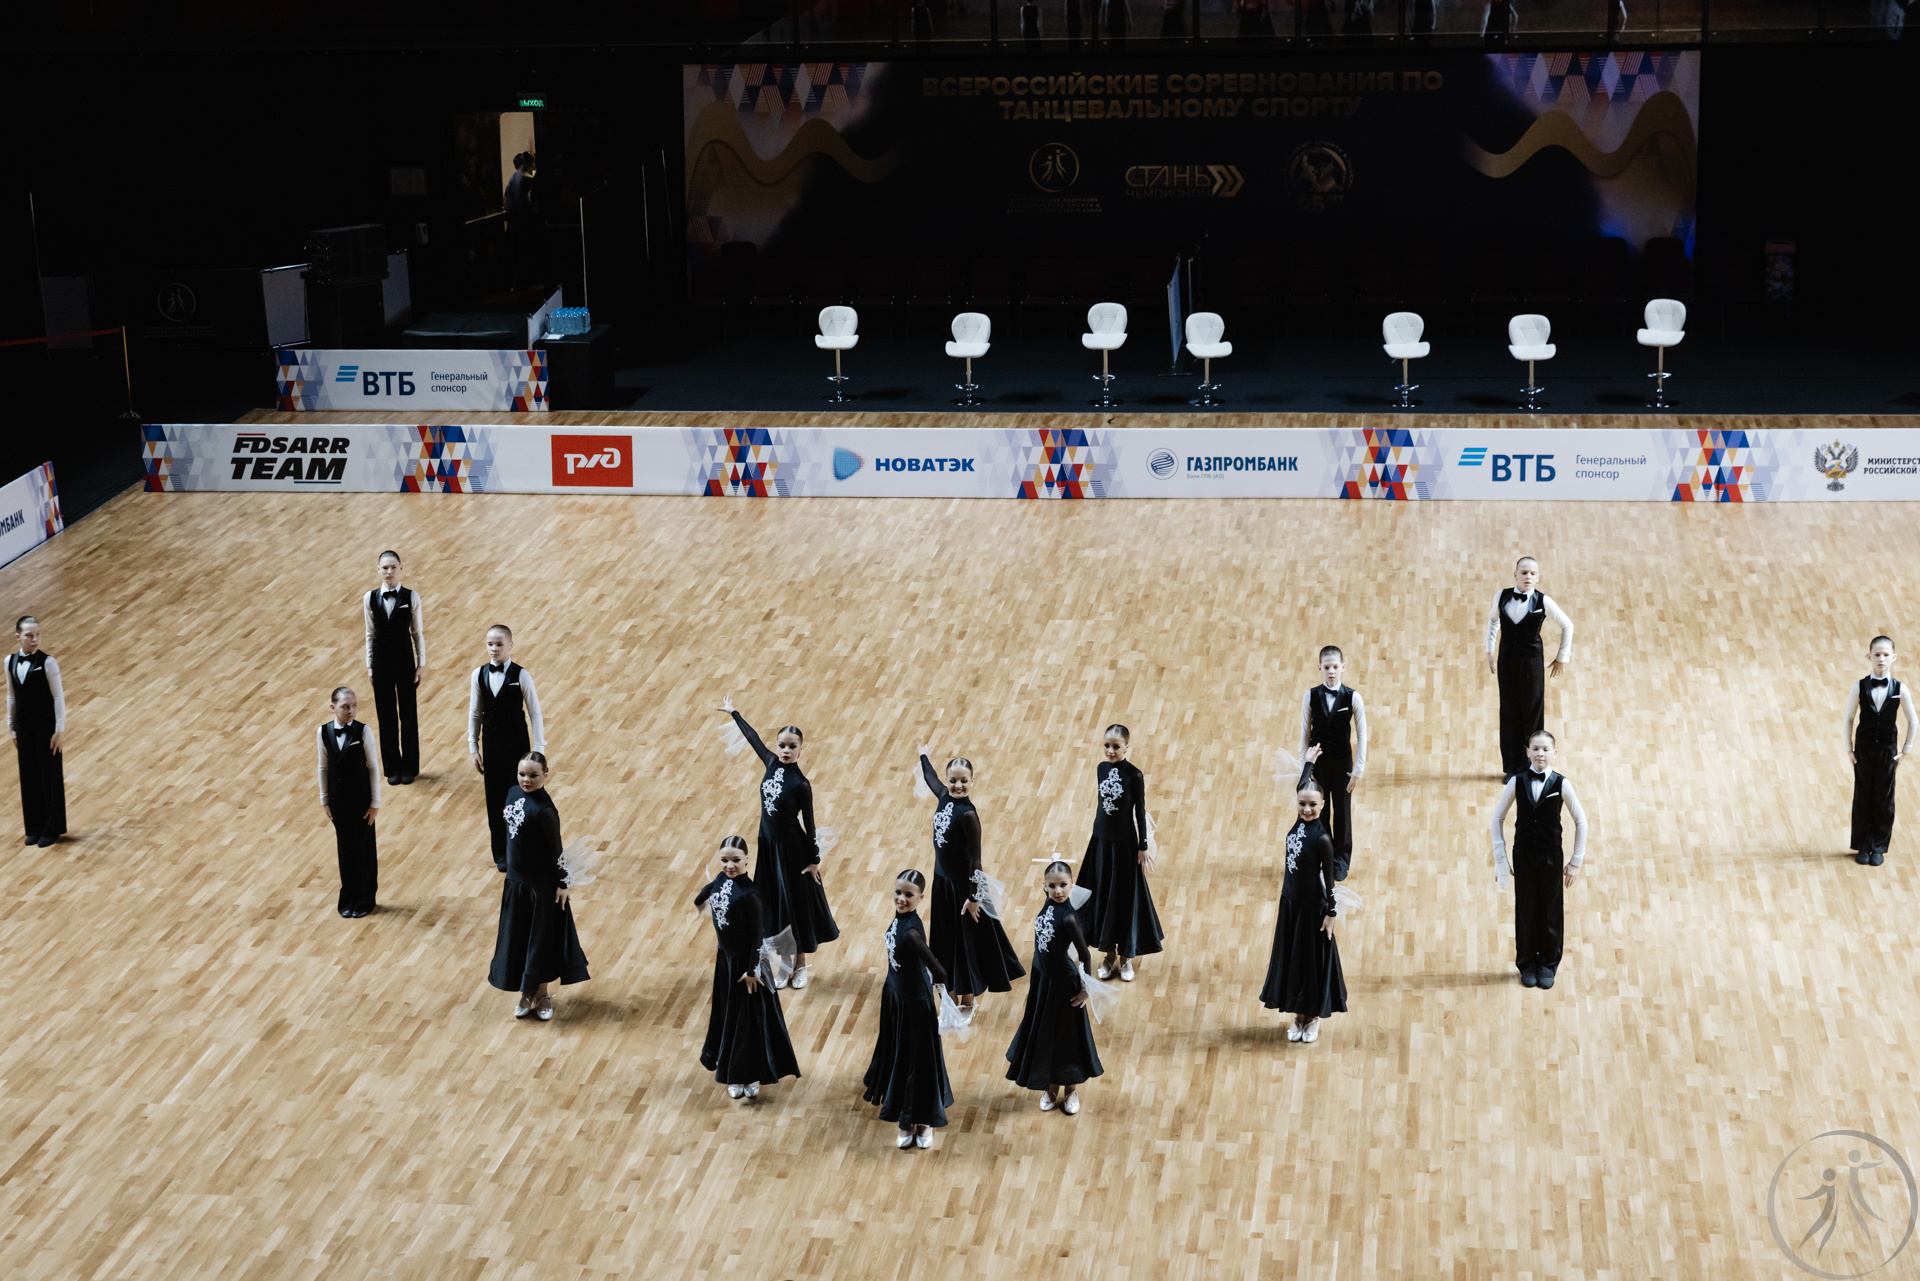 Чемпионат и первенство россии по танцевальному спорту